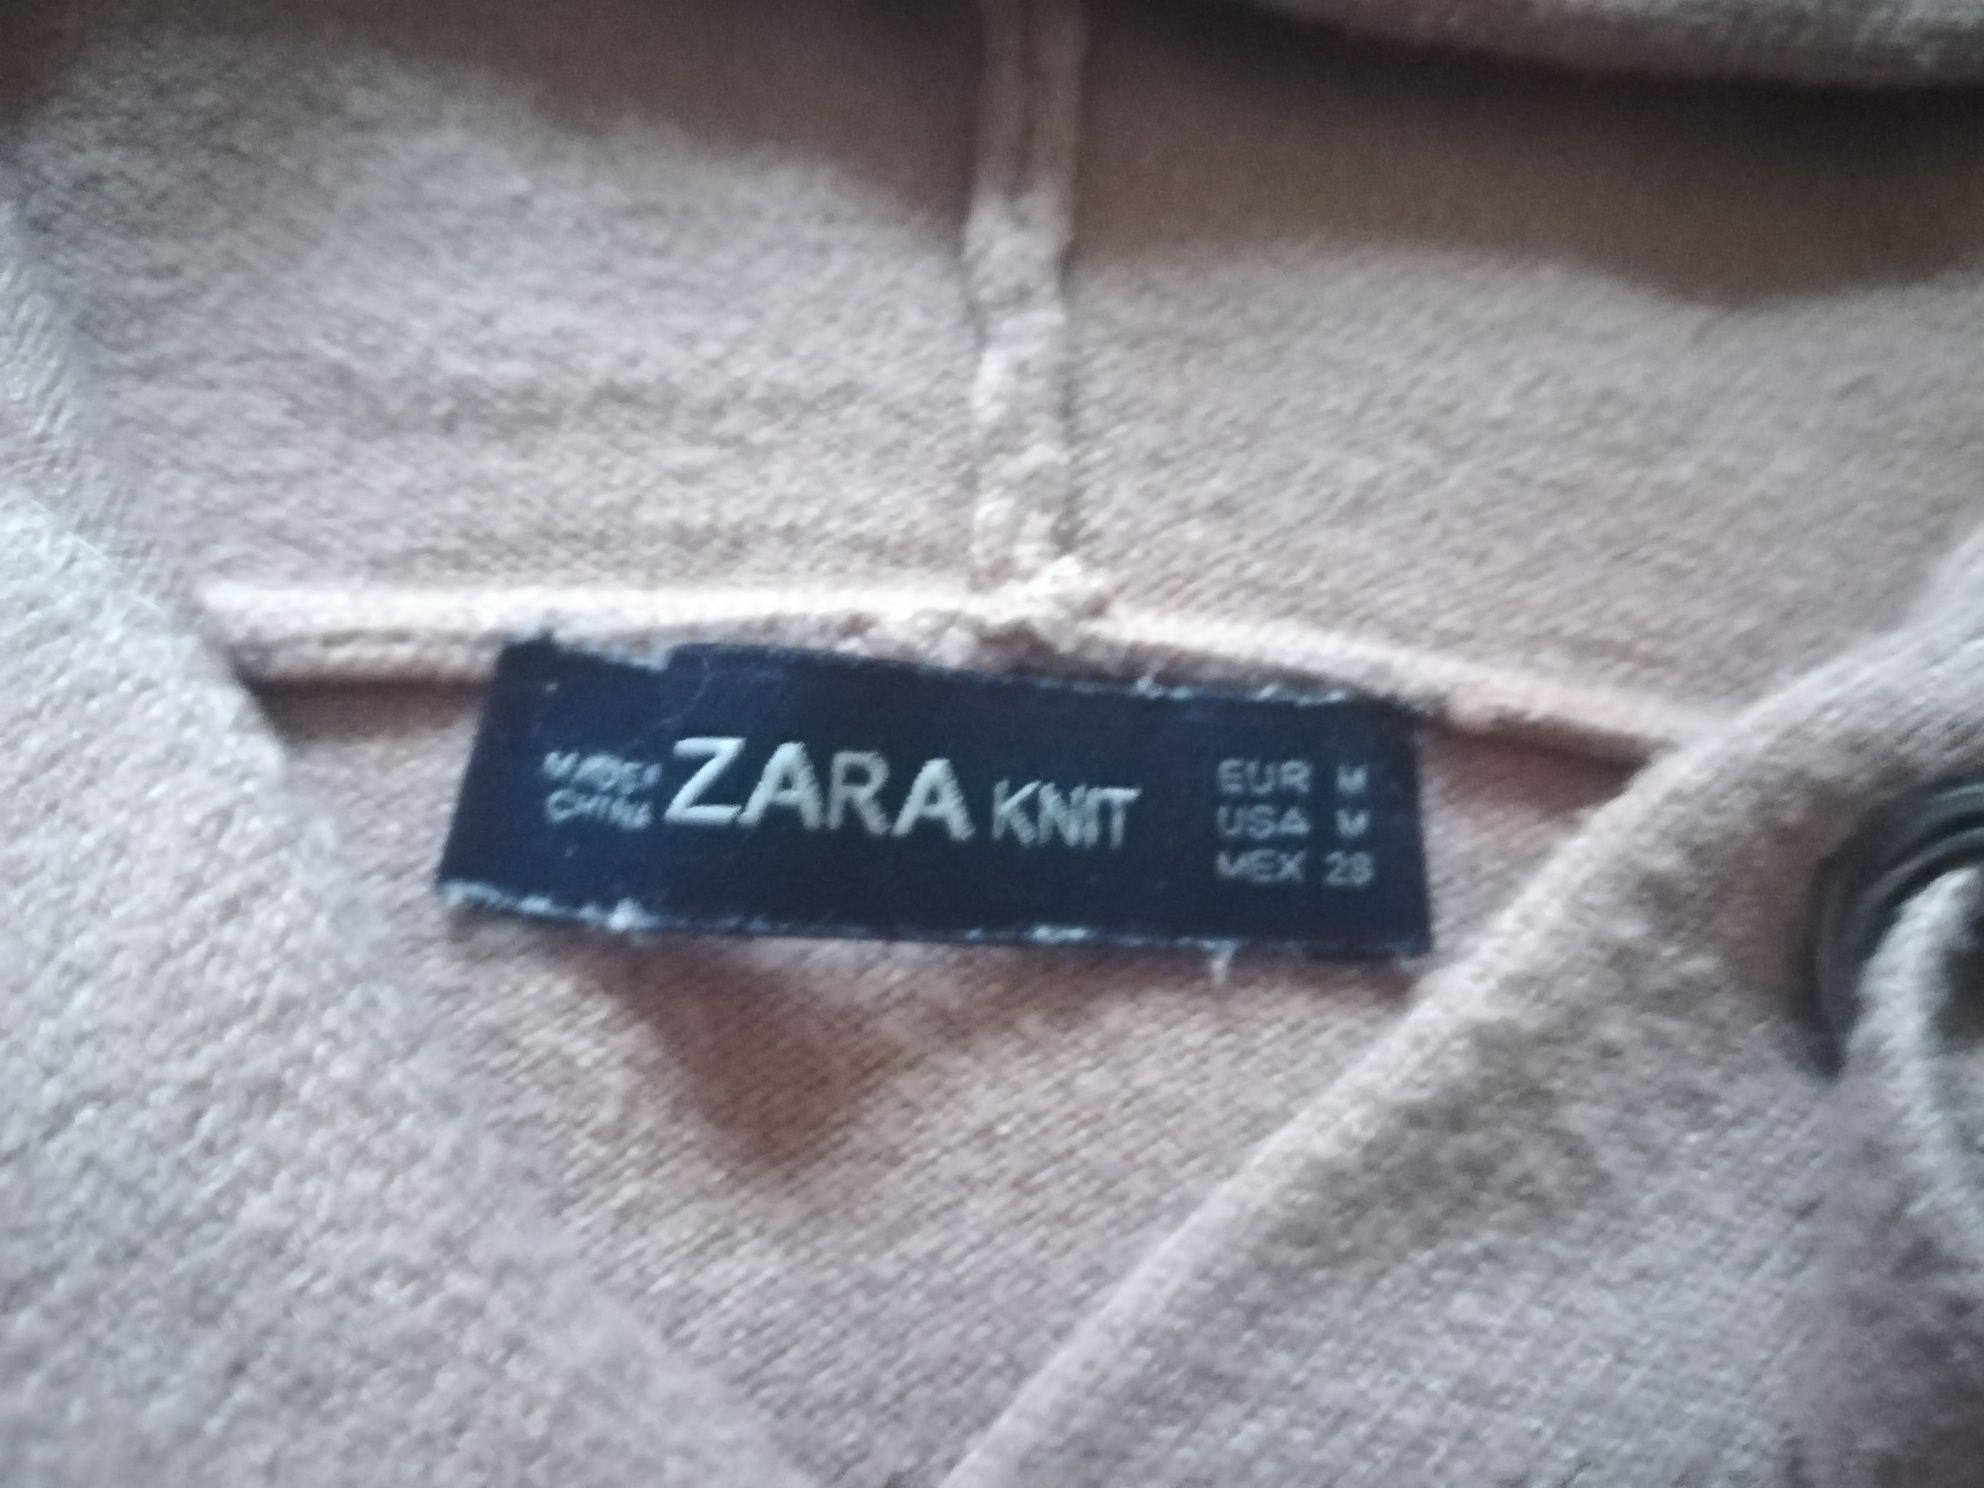 Pulover marimea M, de la Zara Knit stare foarte buna